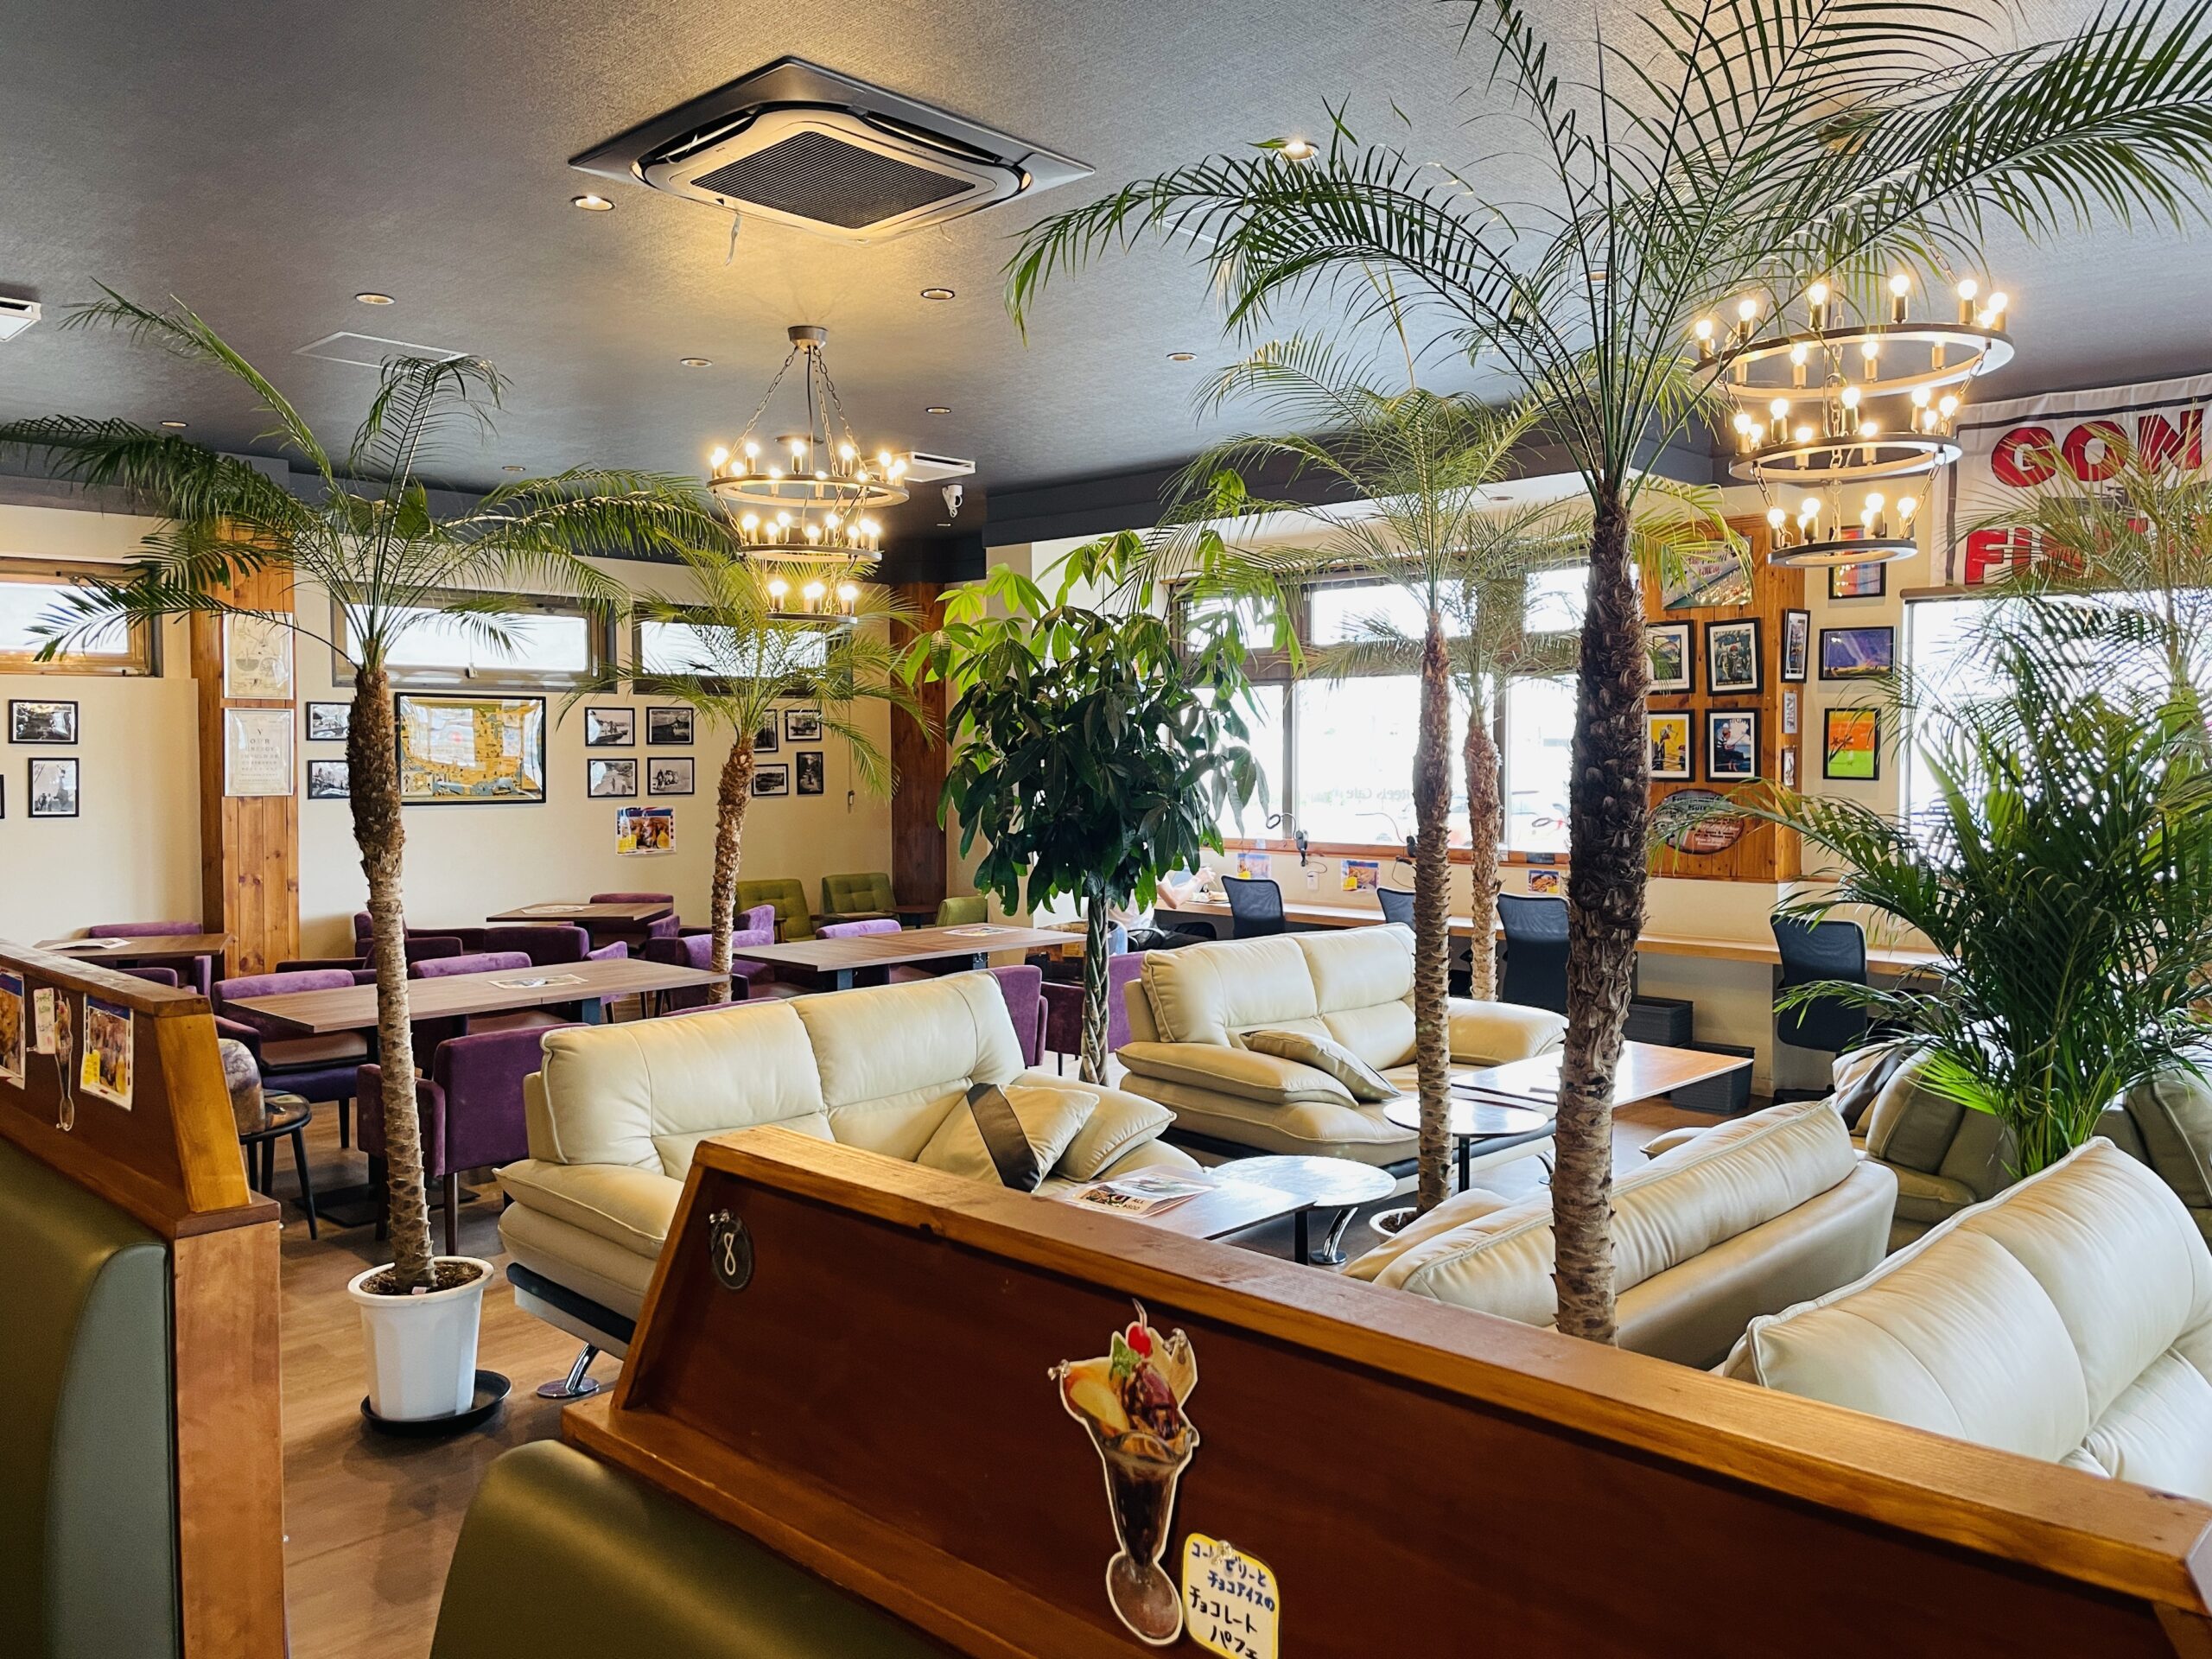 千葉の茂原八千代に新たなカフェが誕生。Old Reels Cafe「オールド・リール・カフェ」の魅力を探る